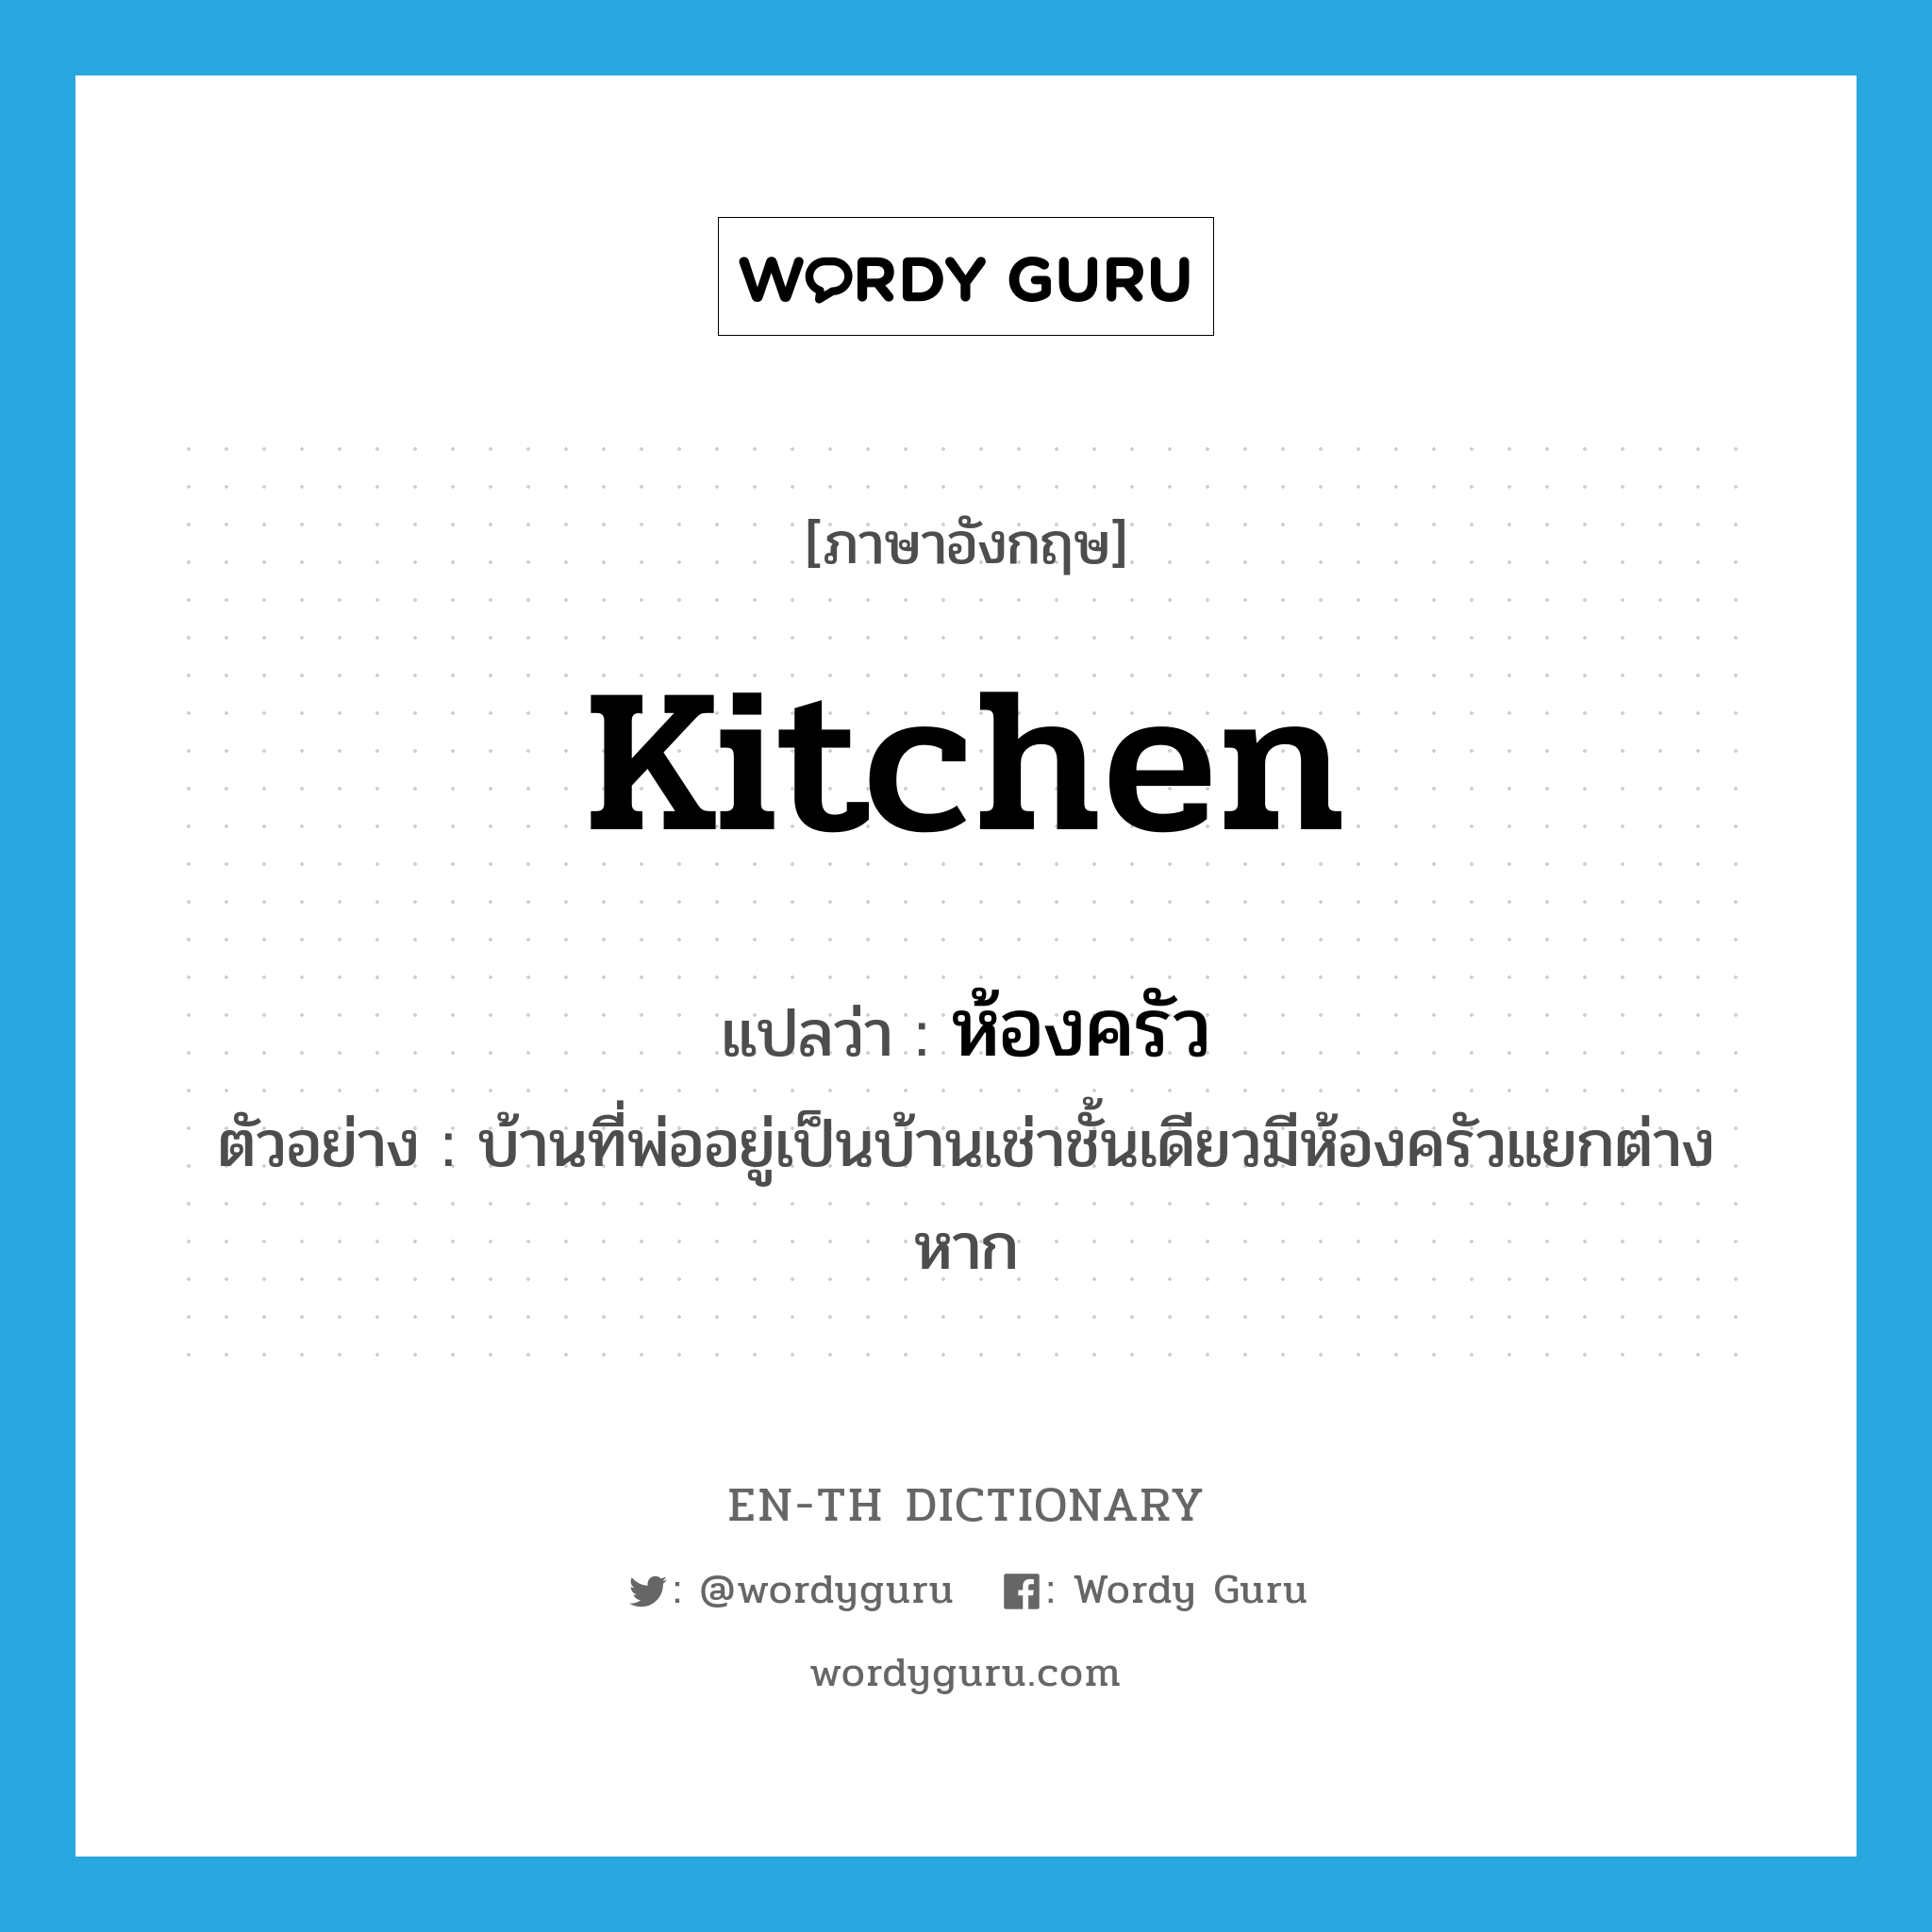 kitchen แปลว่า?, คำศัพท์ภาษาอังกฤษ kitchen แปลว่า ห้องครัว ประเภท N ตัวอย่าง บ้านที่พ่ออยู่เป็นบ้านเช่าชั้นเดียวมีห้องครัวแยกต่างหาก หมวด N